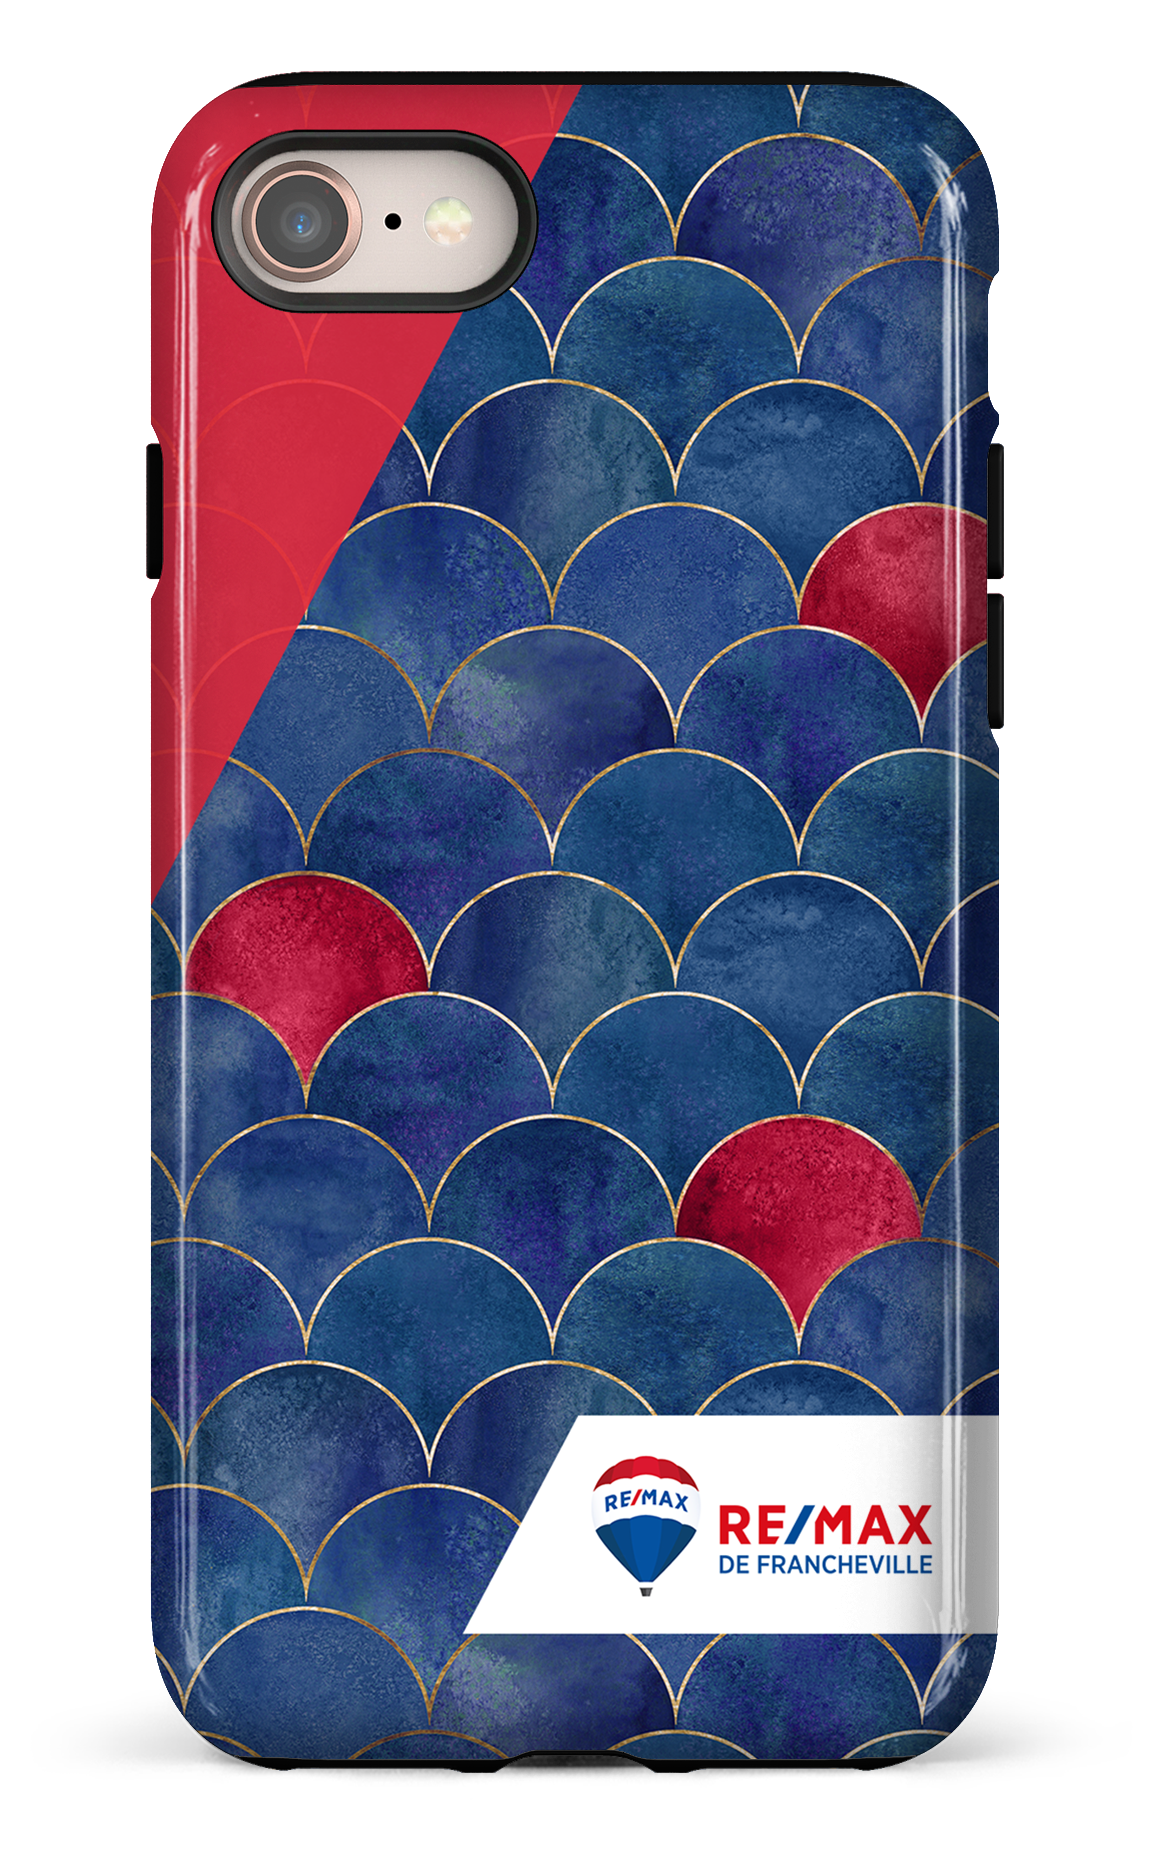 Écailles bicolores de Francheville - iPhone 7